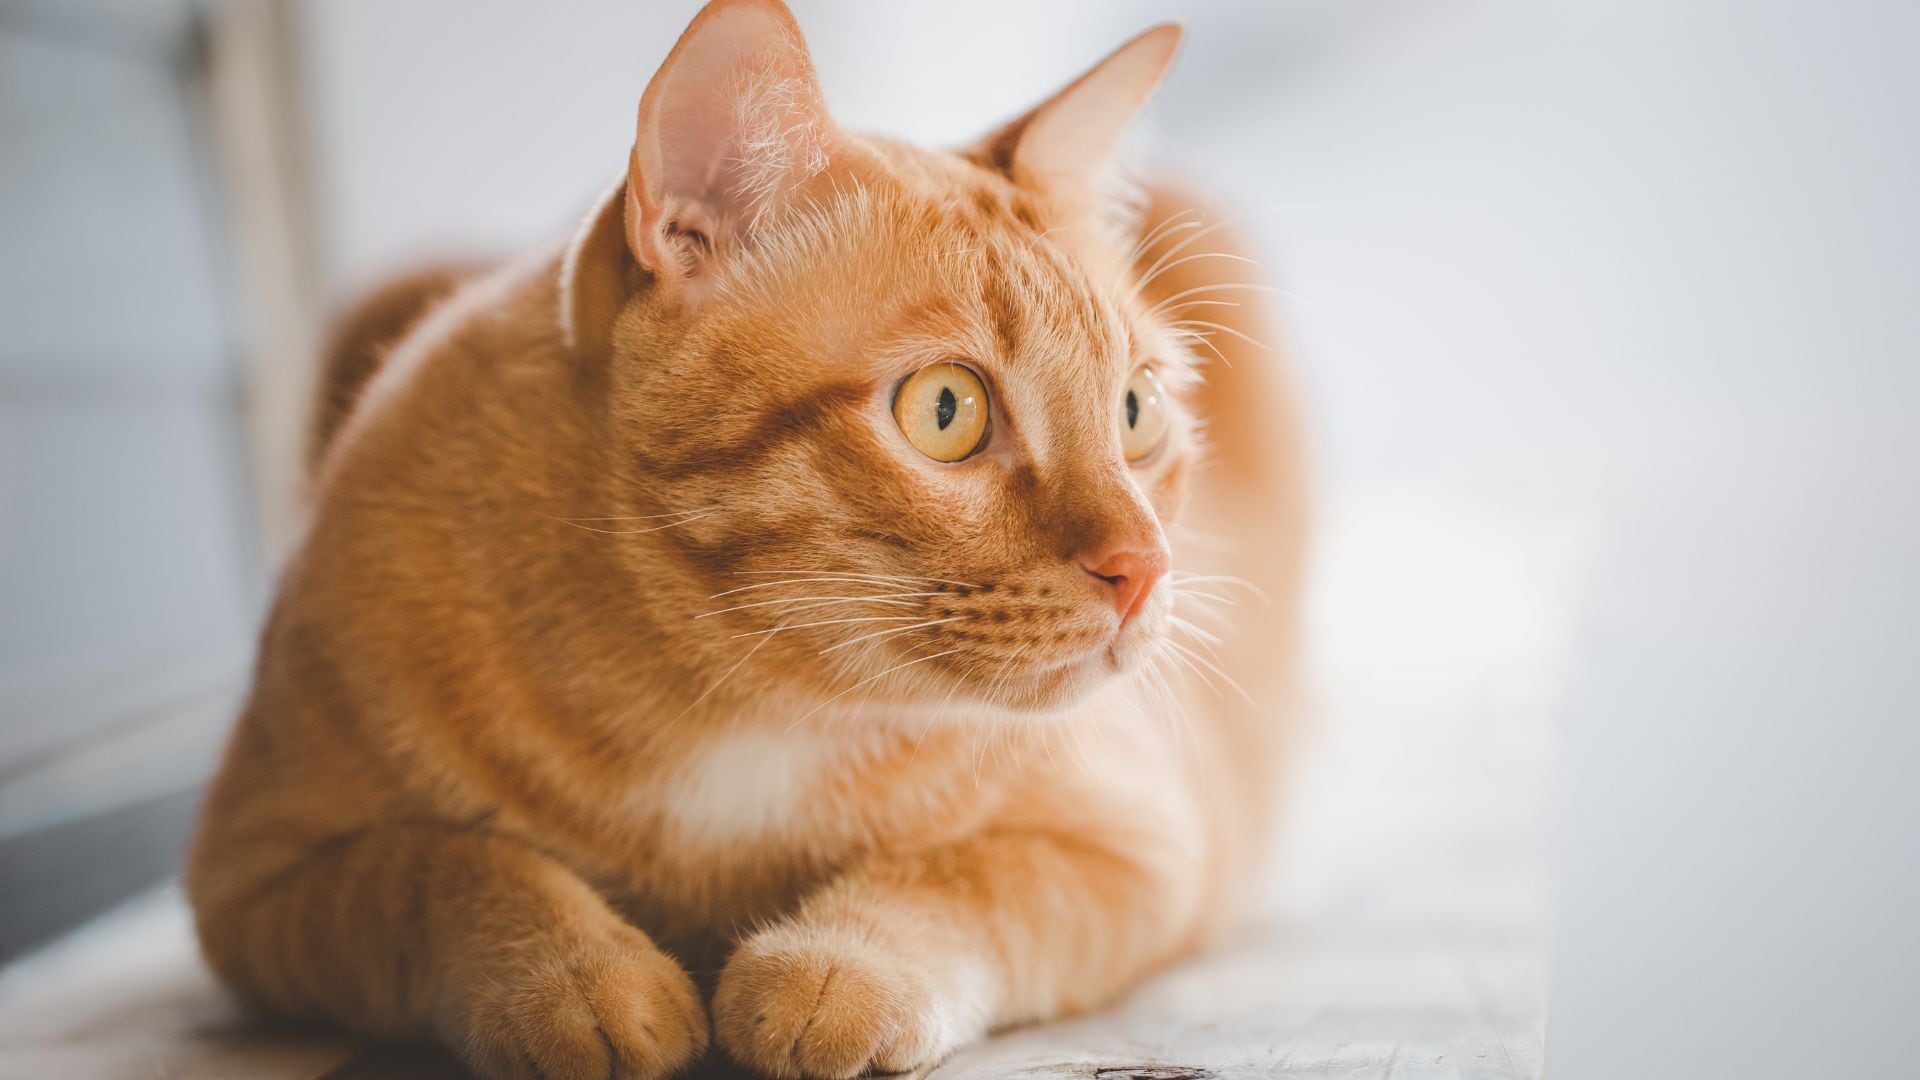 El gato naranja ganó popularidad, ya que muchos se convirtieron en personajes icónicos como Garfield.